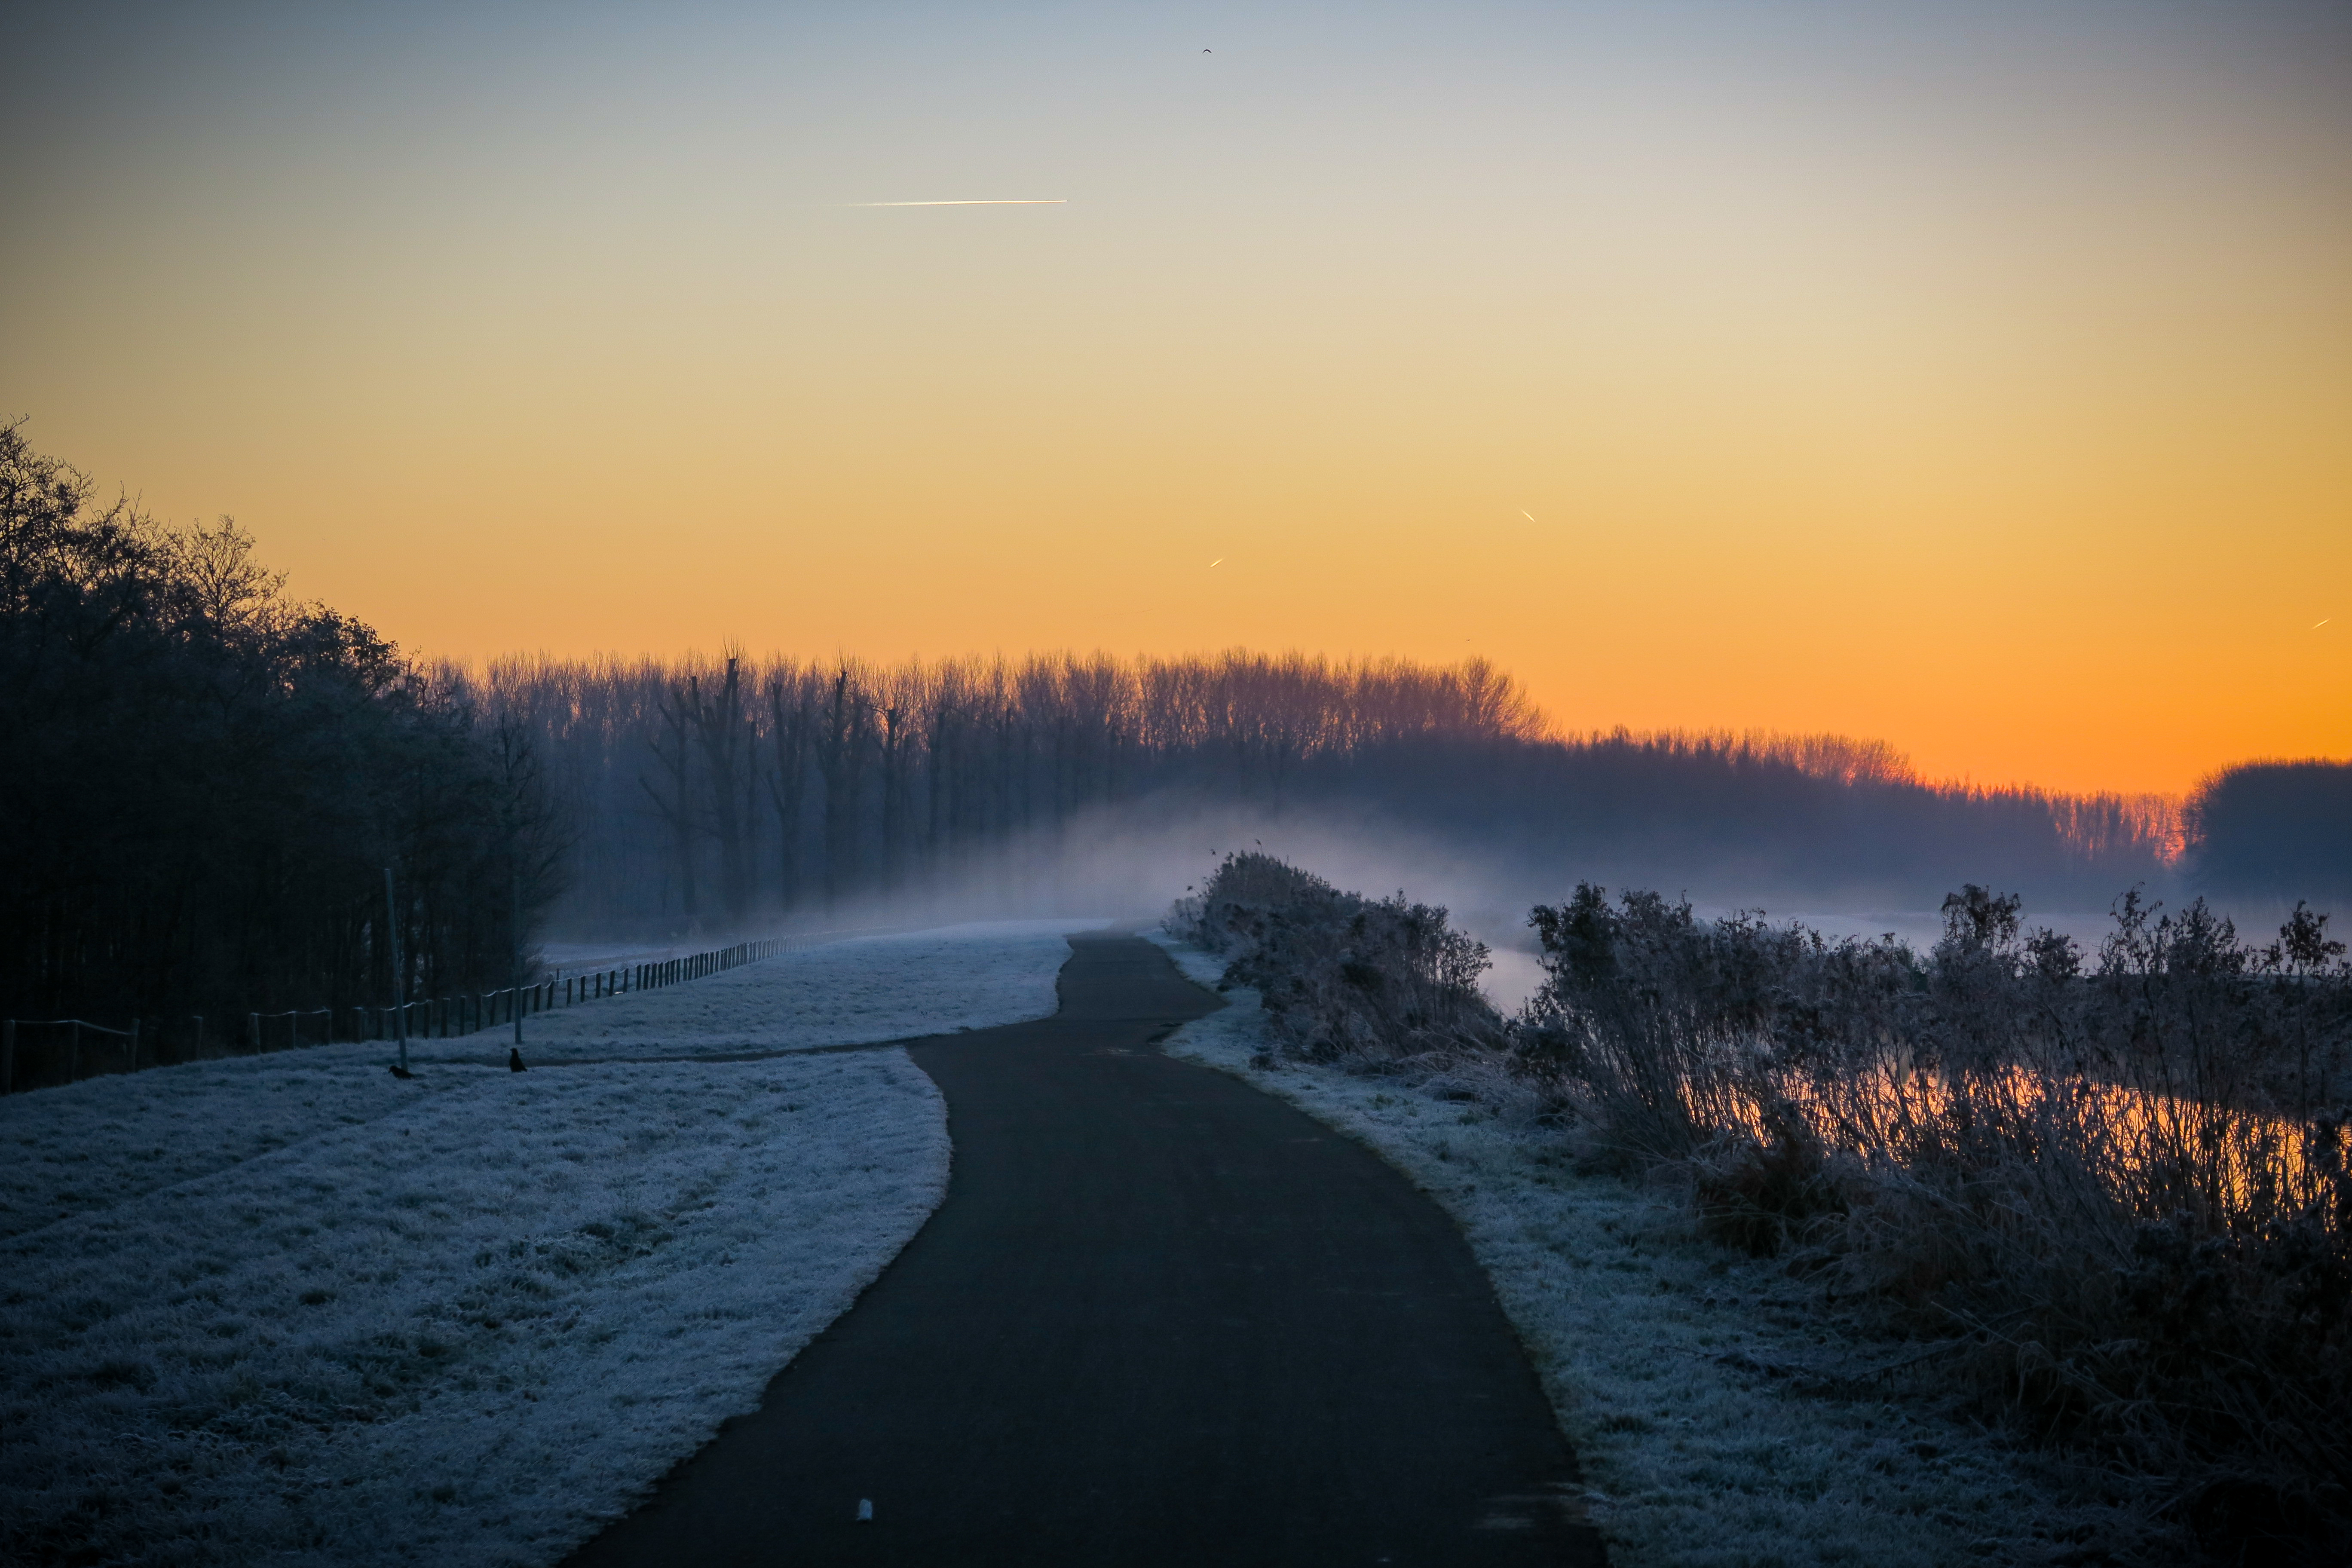 Фото закат, путь, пейзаж, обои туманные сумерки, пейзажи - бесплатные картинки на Fonwall